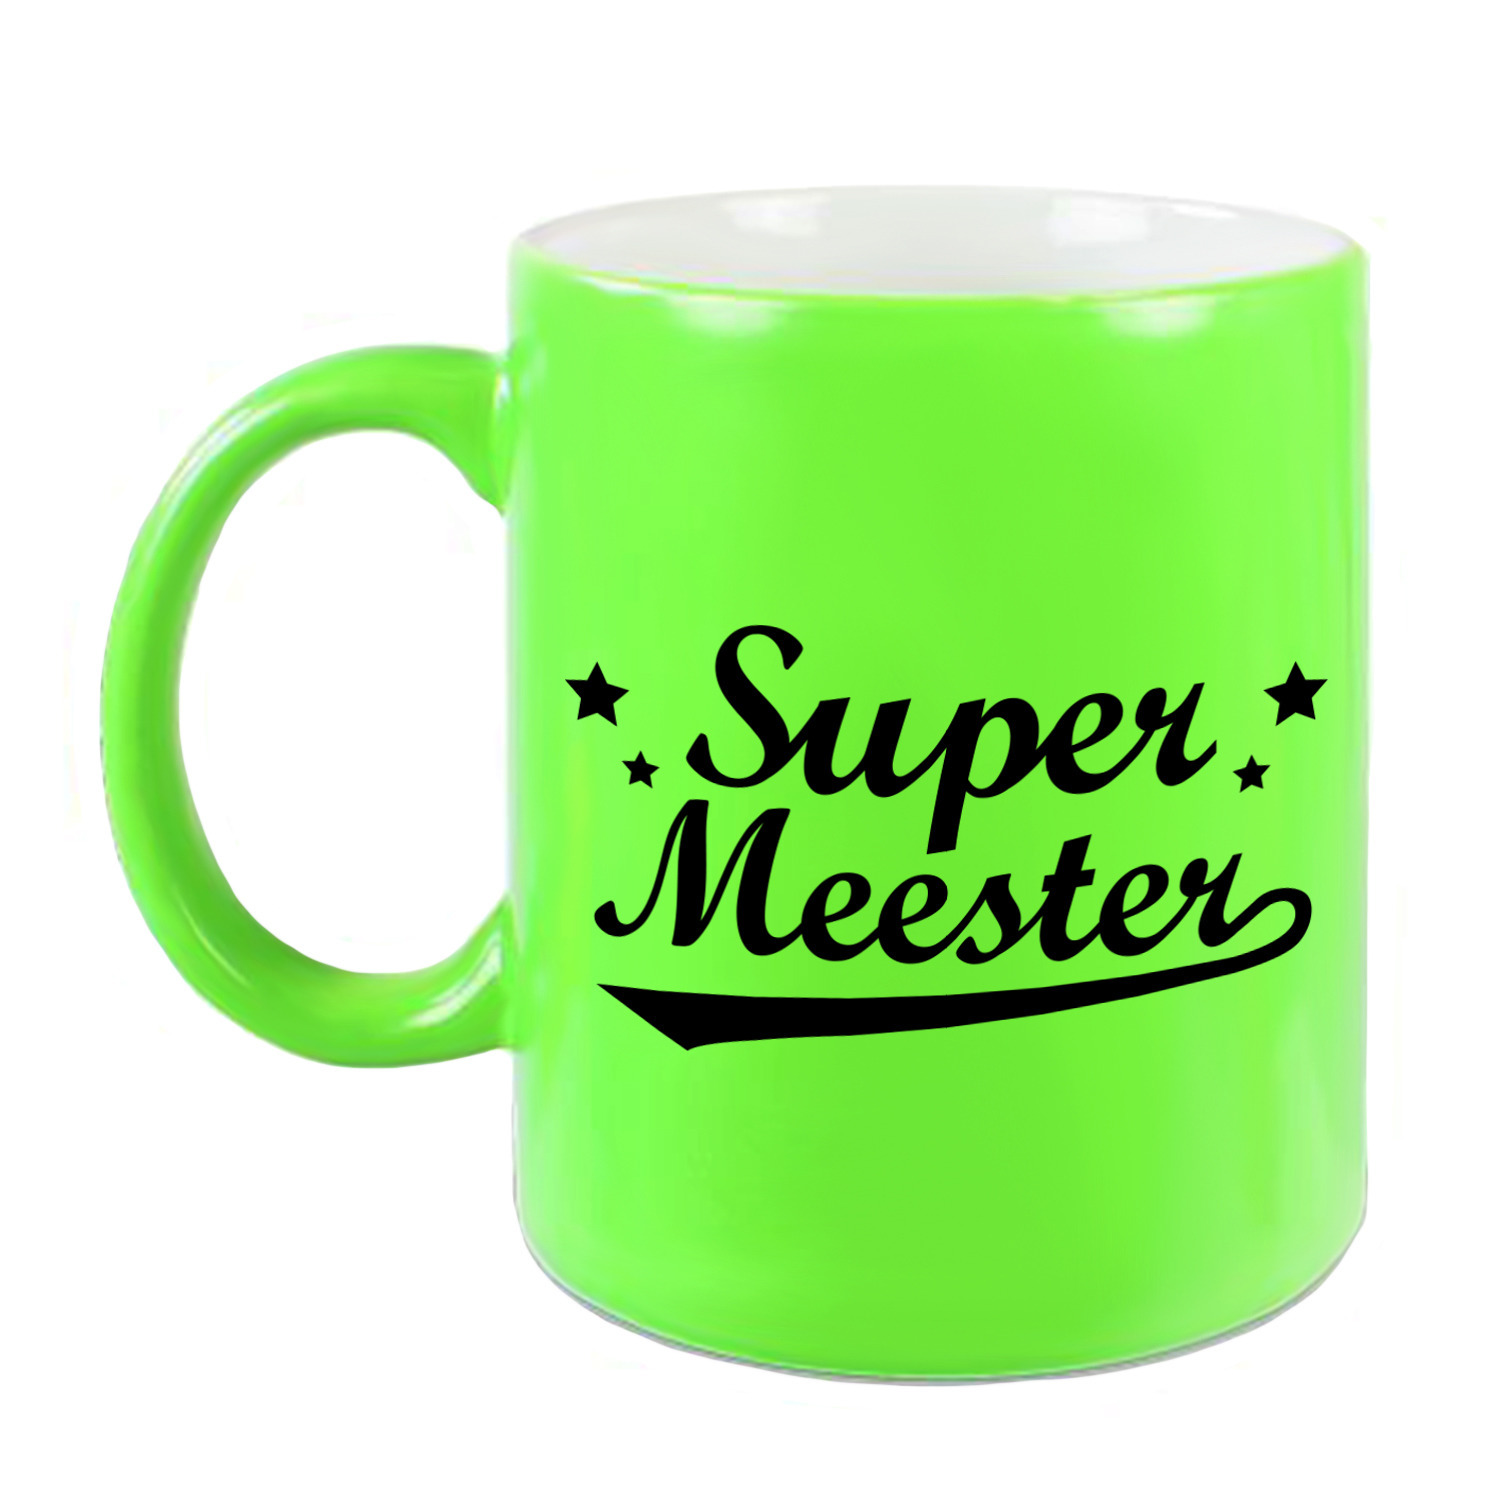 Super meester beker-mok neon groen 330 ml Meesterdag-einde schooljaar cadeau